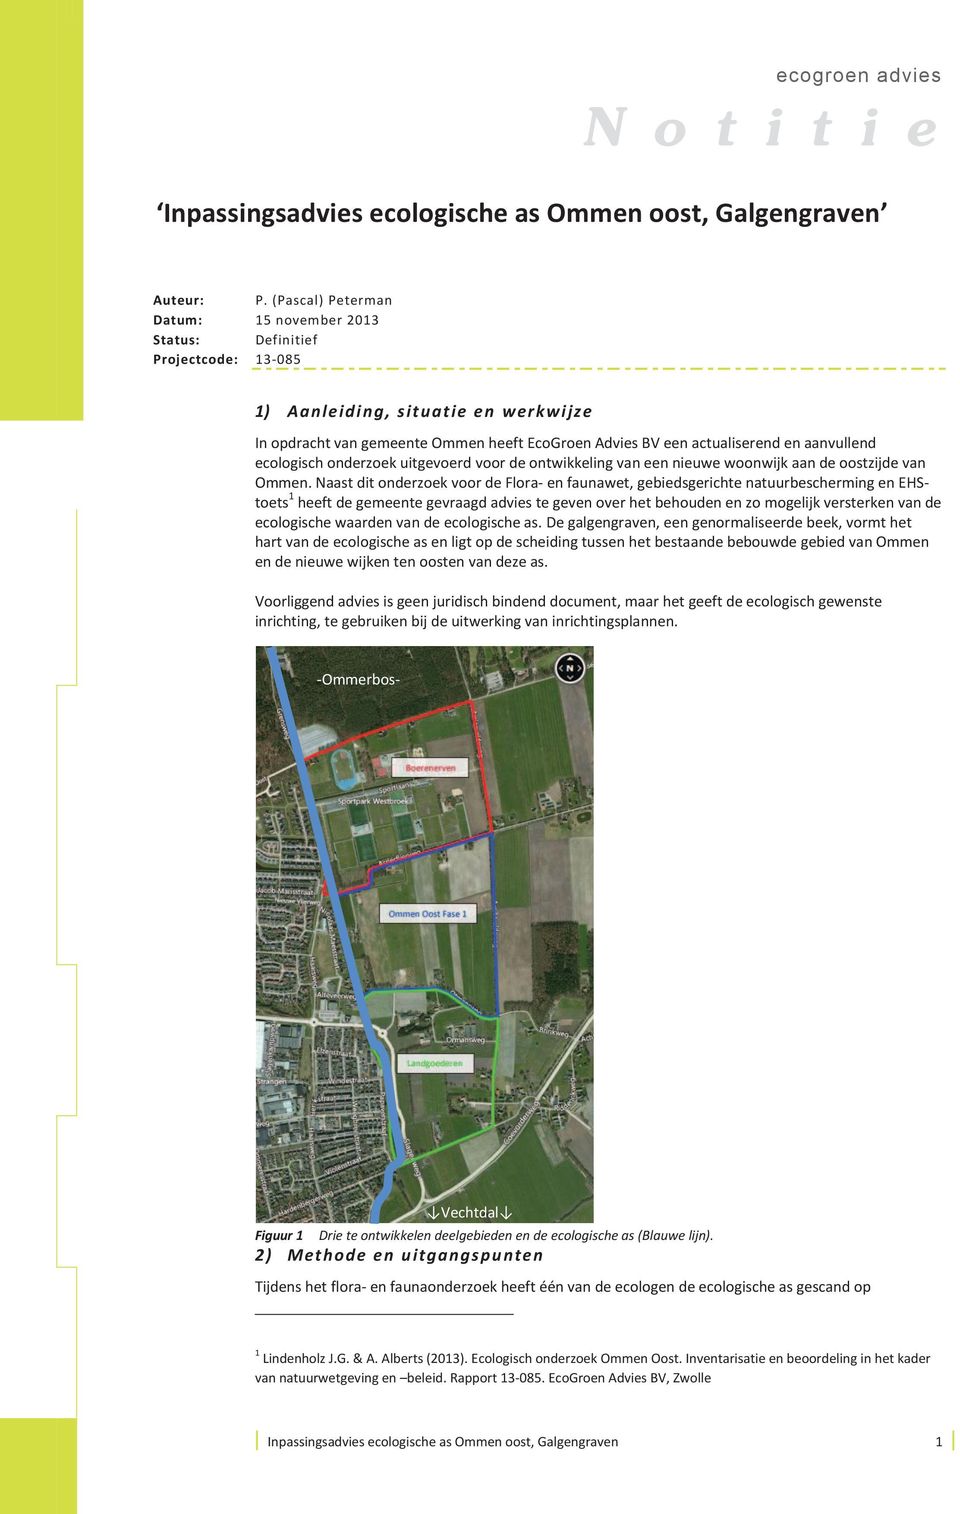 aanvullend ecologisch onderzoek uitgevoerd voor de ontwikkeling van een nieuwe woonwijk aan de oostzijde van Ommen.